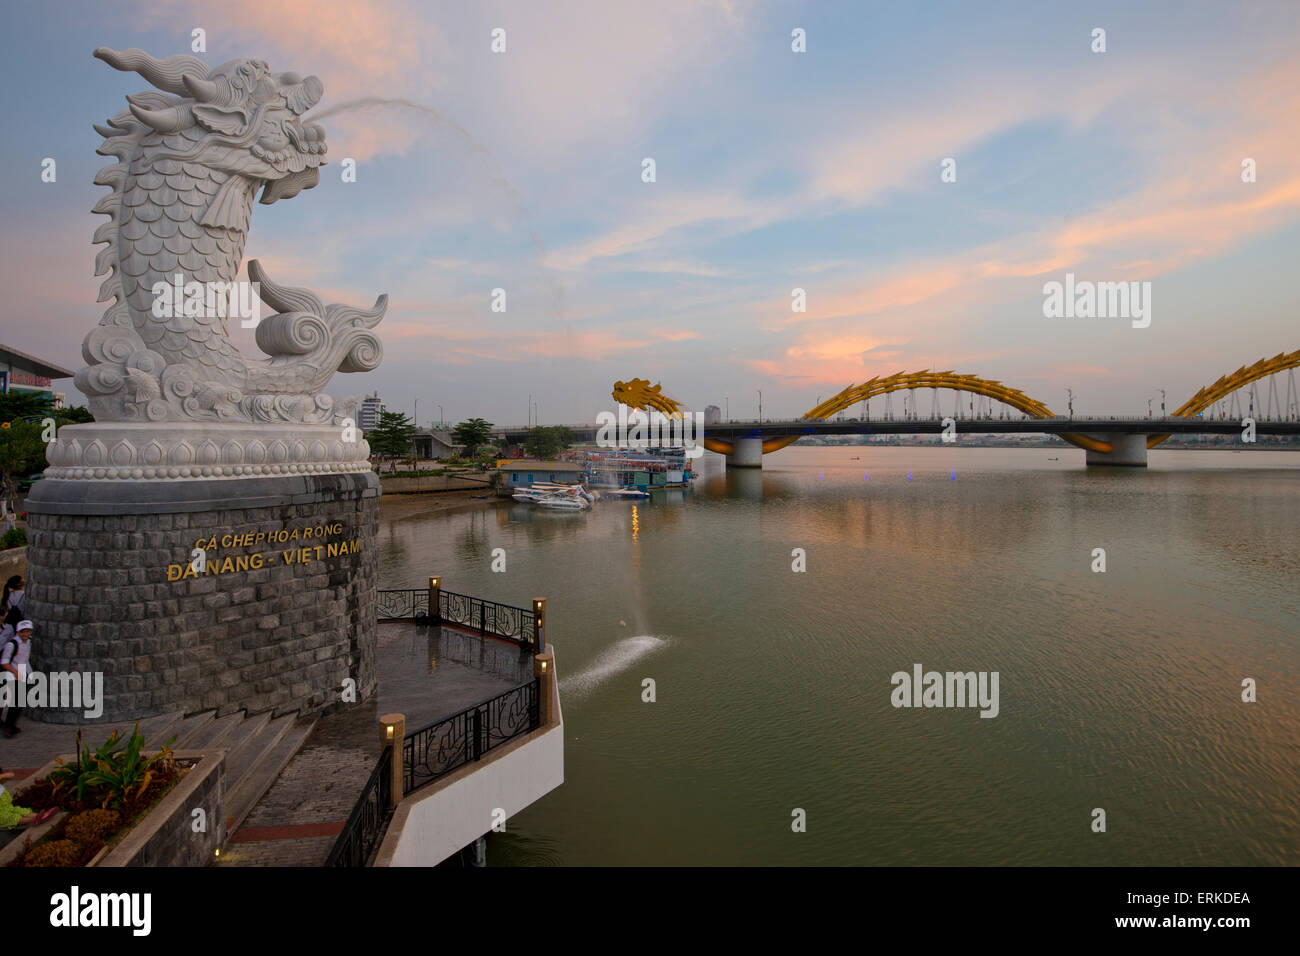 Dragon Bridge, Cầu Rồng, sur la rivière Han, Danang, Da nang, Vietnam central, Vietnam Banque D'Images